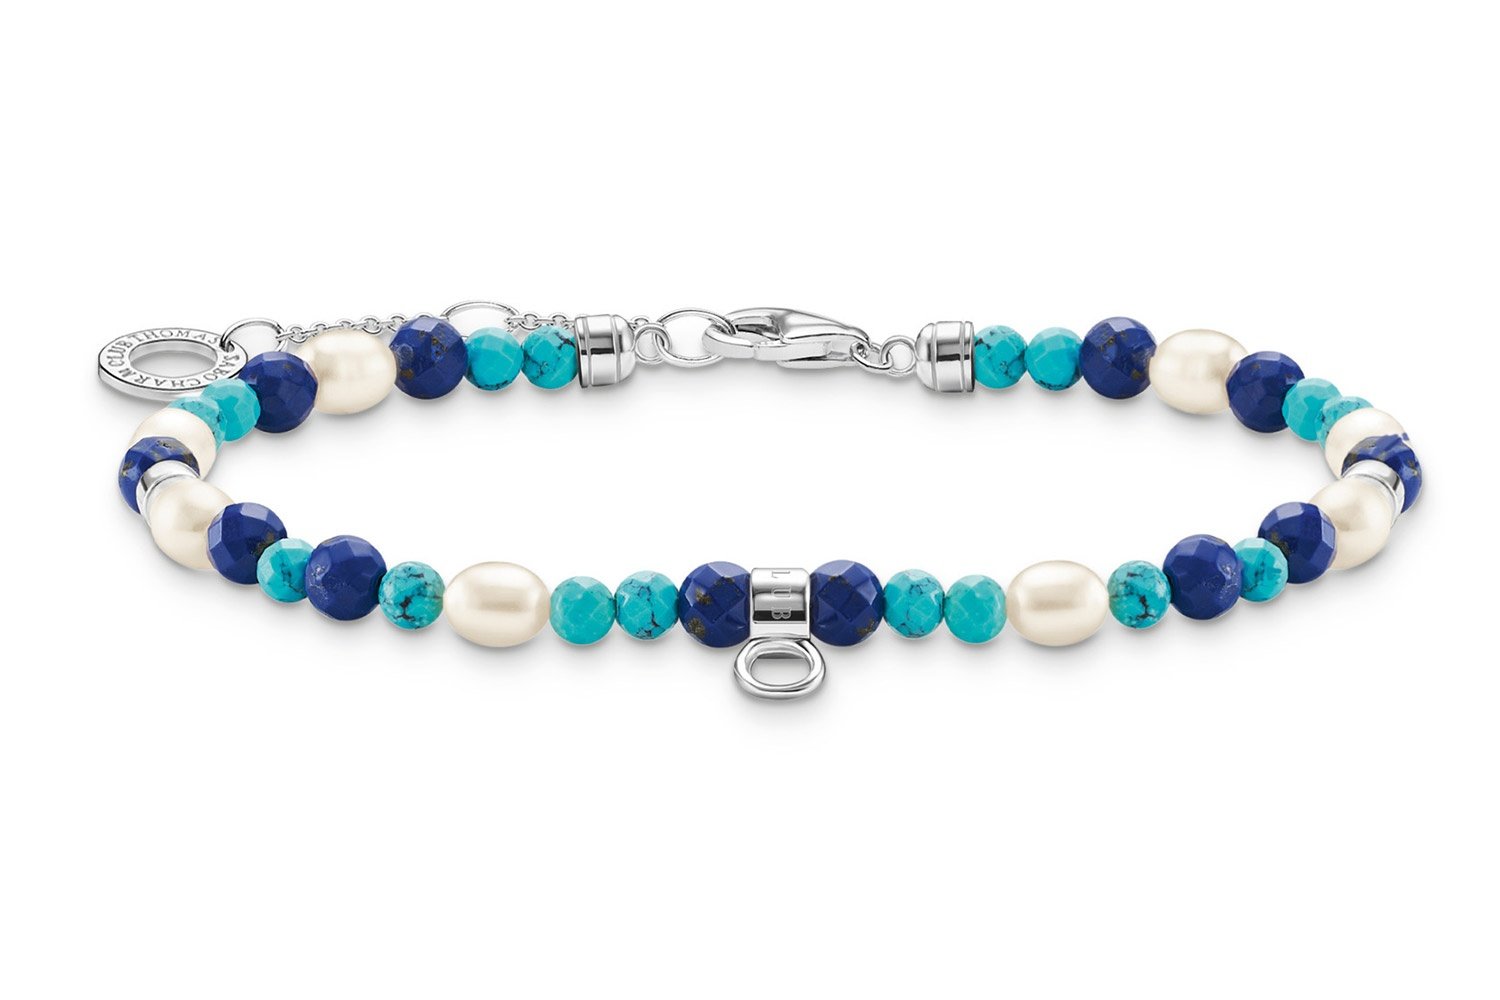 Thomas Sabo A2064-775-7-L19v Armband mit Blauen Steinen und Perlen